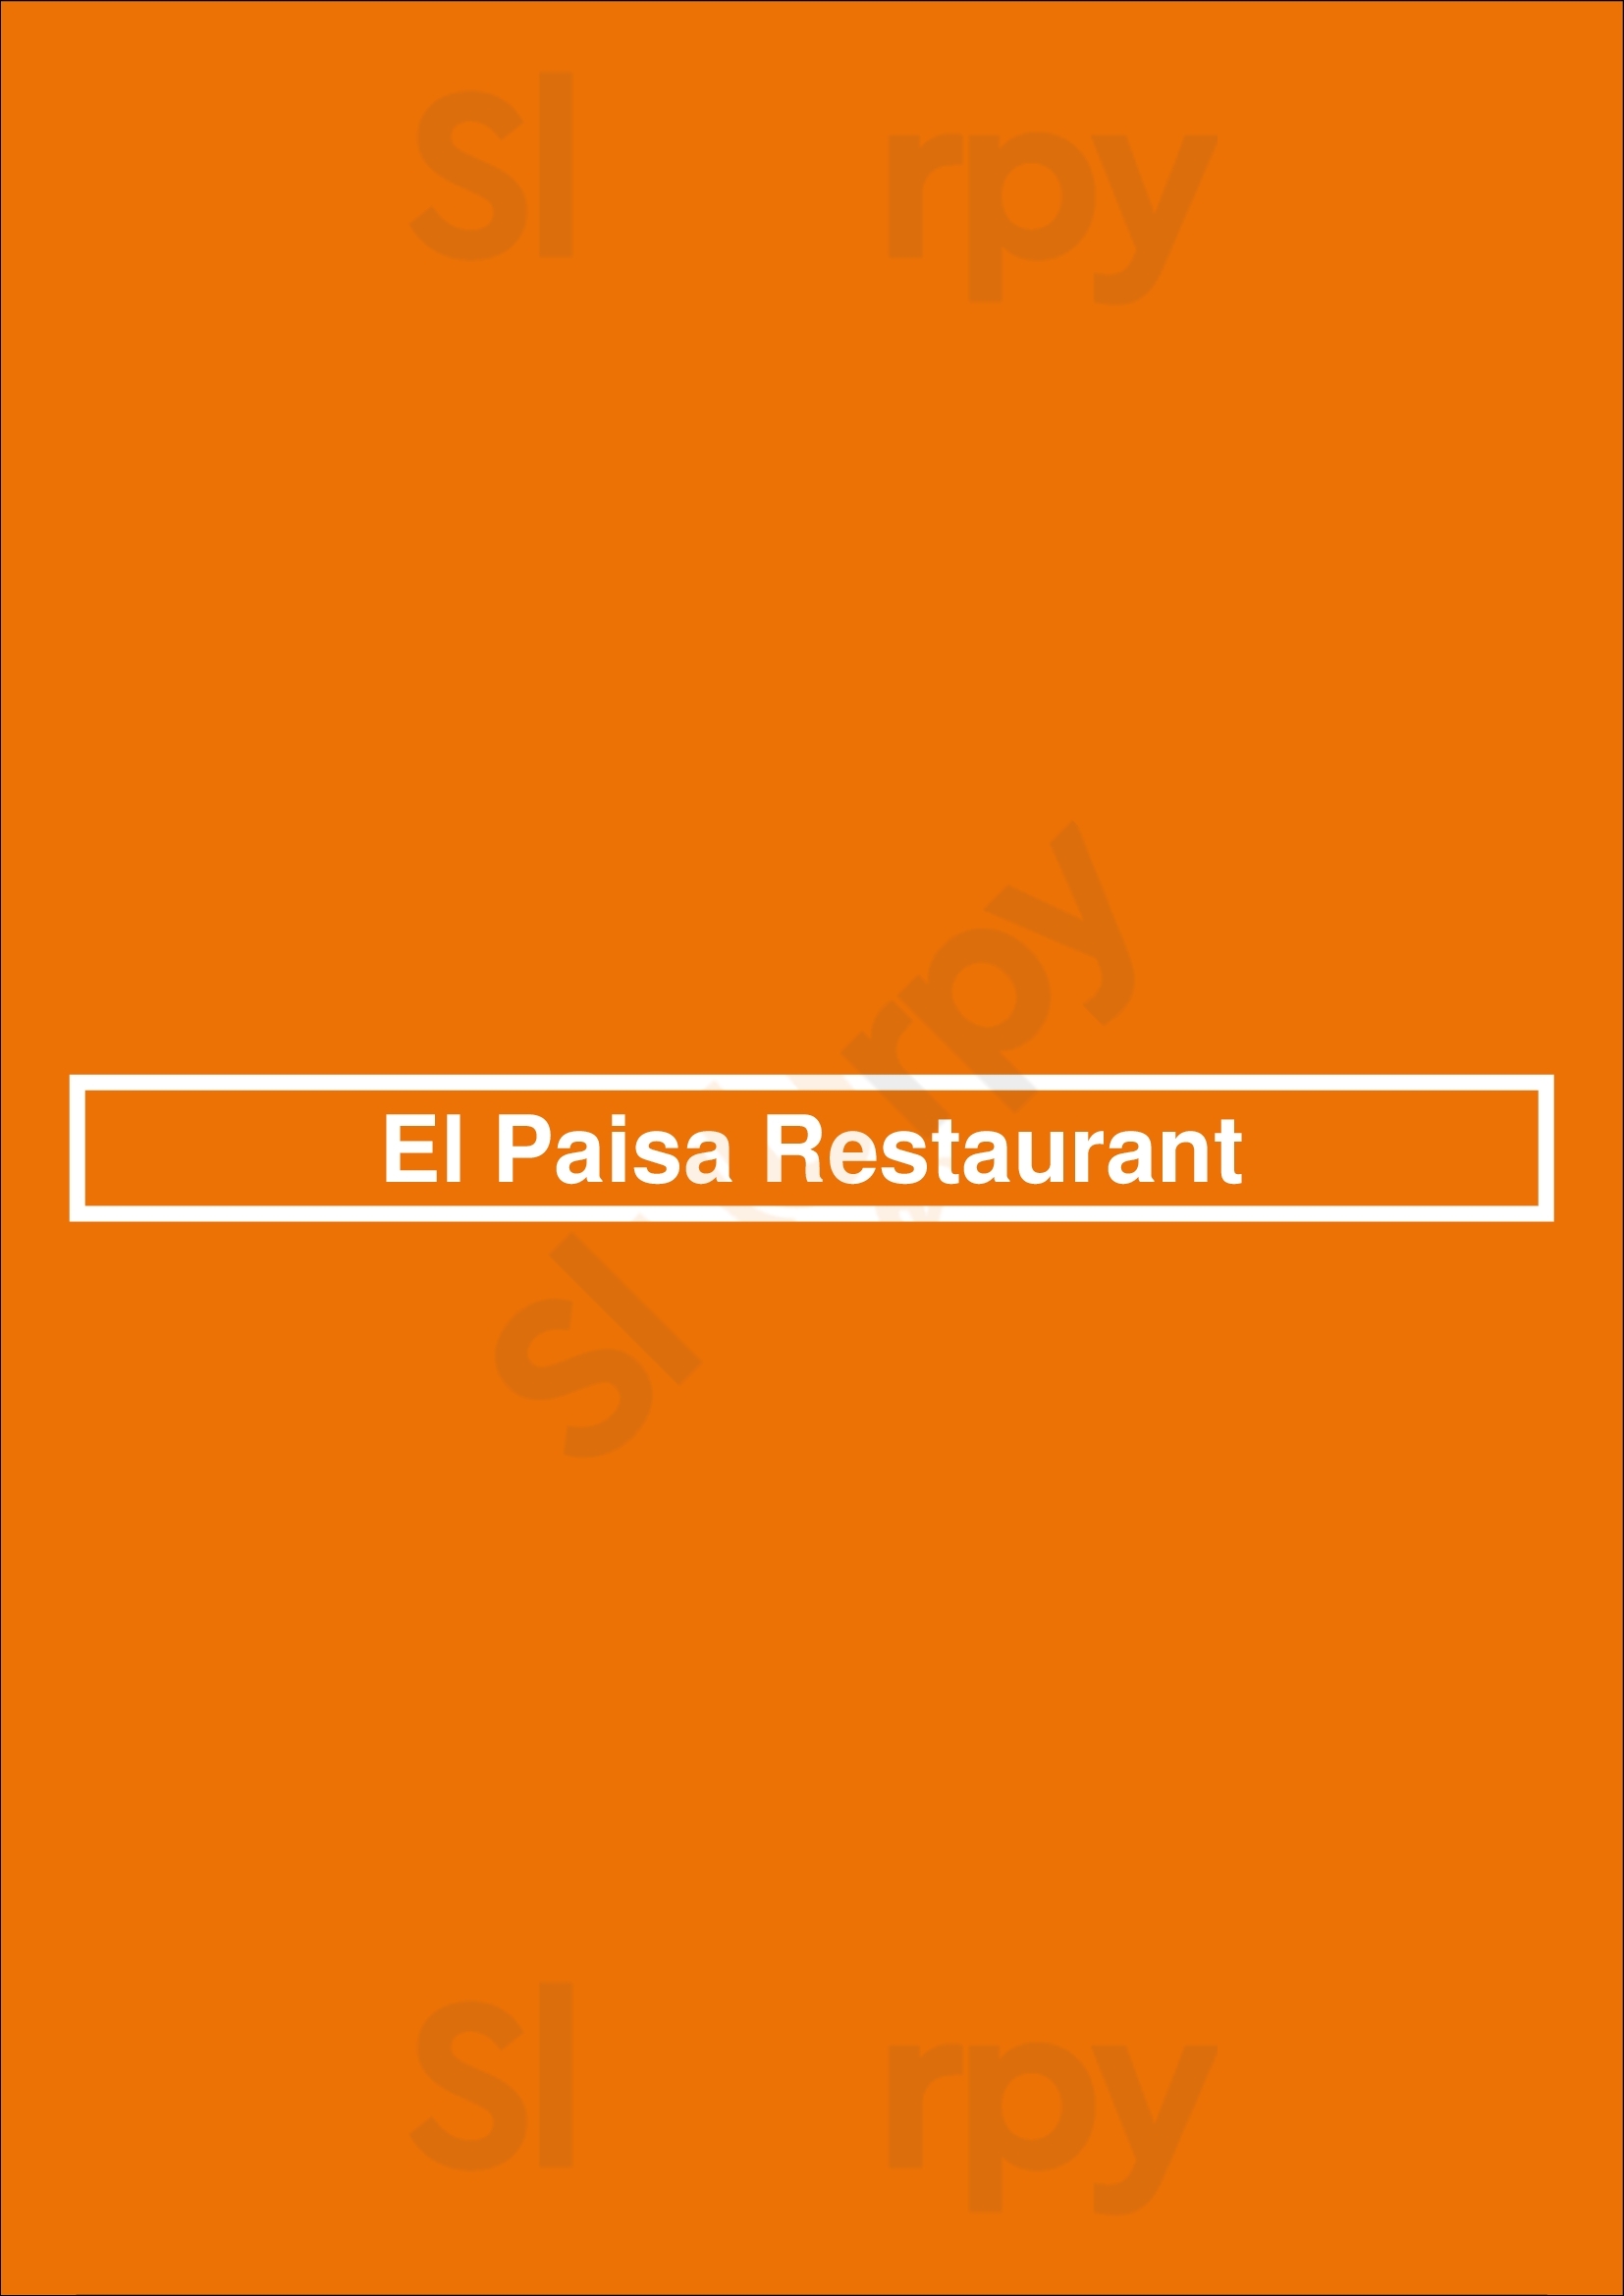 El Paisa Restaurant Long Beach Menu - 1